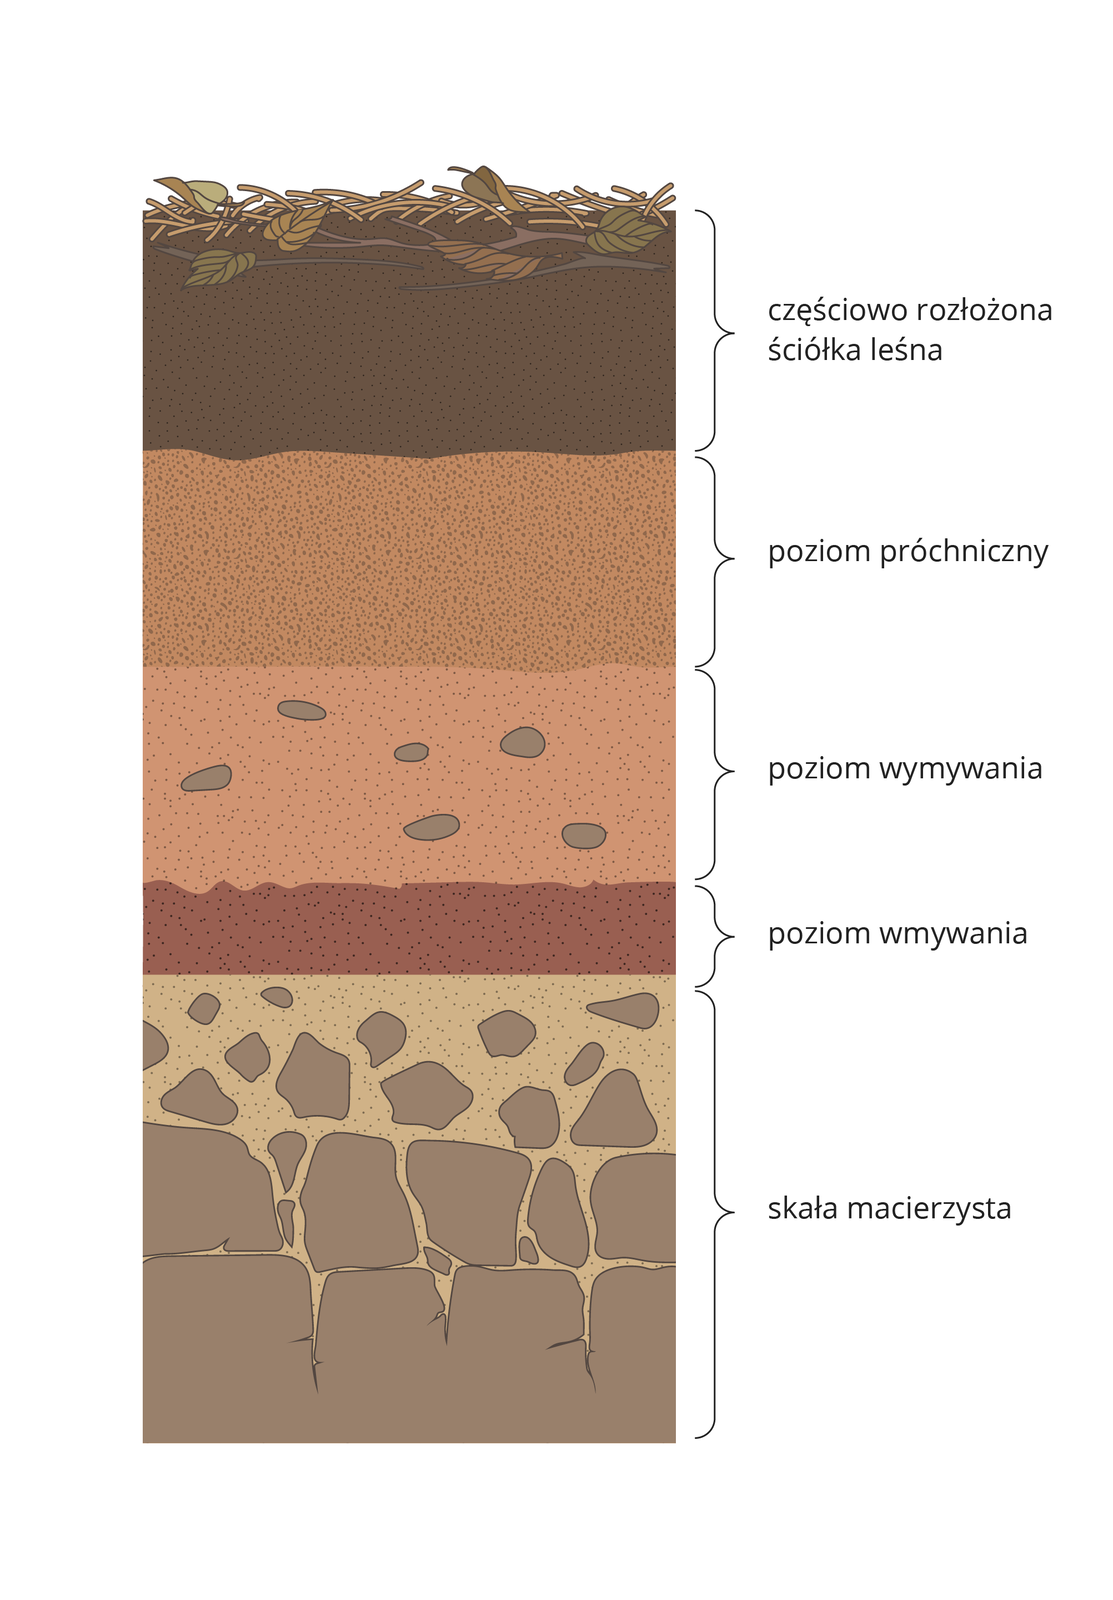 Ilustracja prezentuje przekrój profilu glebowego, na którym od dołu widać kolejno warstwy: skała macierzysta, poziom wmywania, poziom wymywania, poziom próchnicy, częściowo rozłożona ściółka leśna.